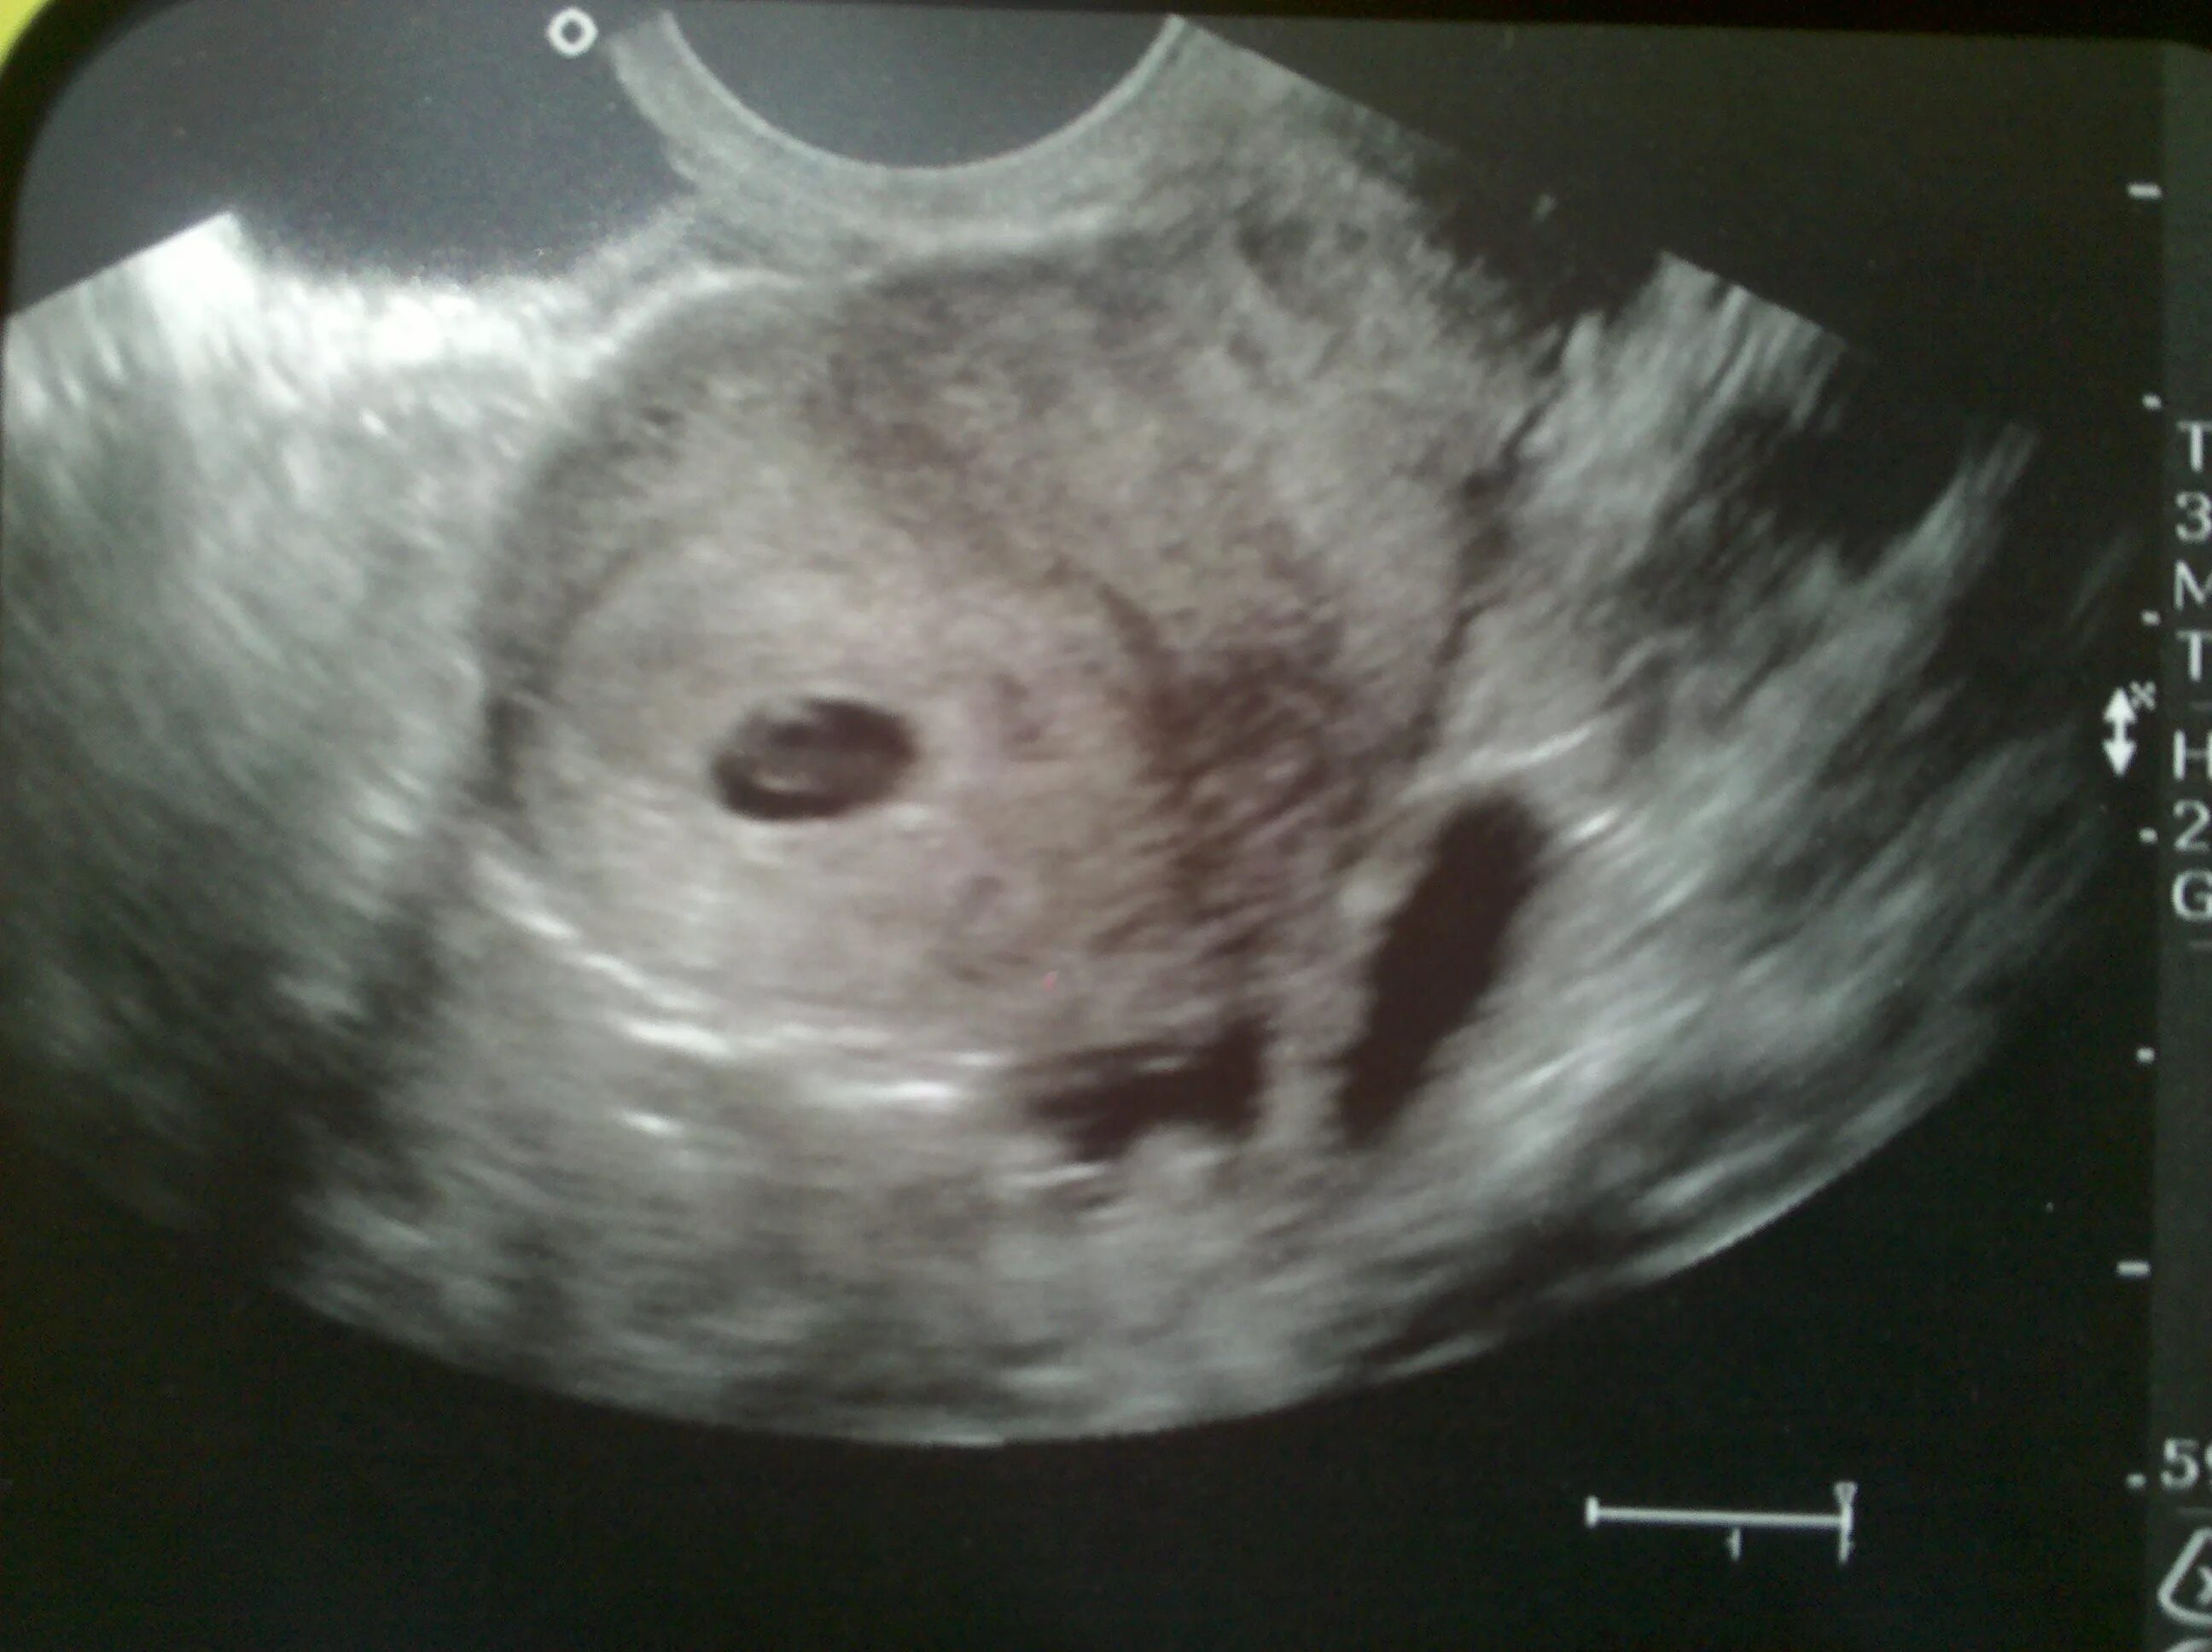 Плод на 1 неделе беременности. 3 Недели беременности фото плода на УЗИ. УЗИ две недели беременности. УЗИ 7 недель беременности.